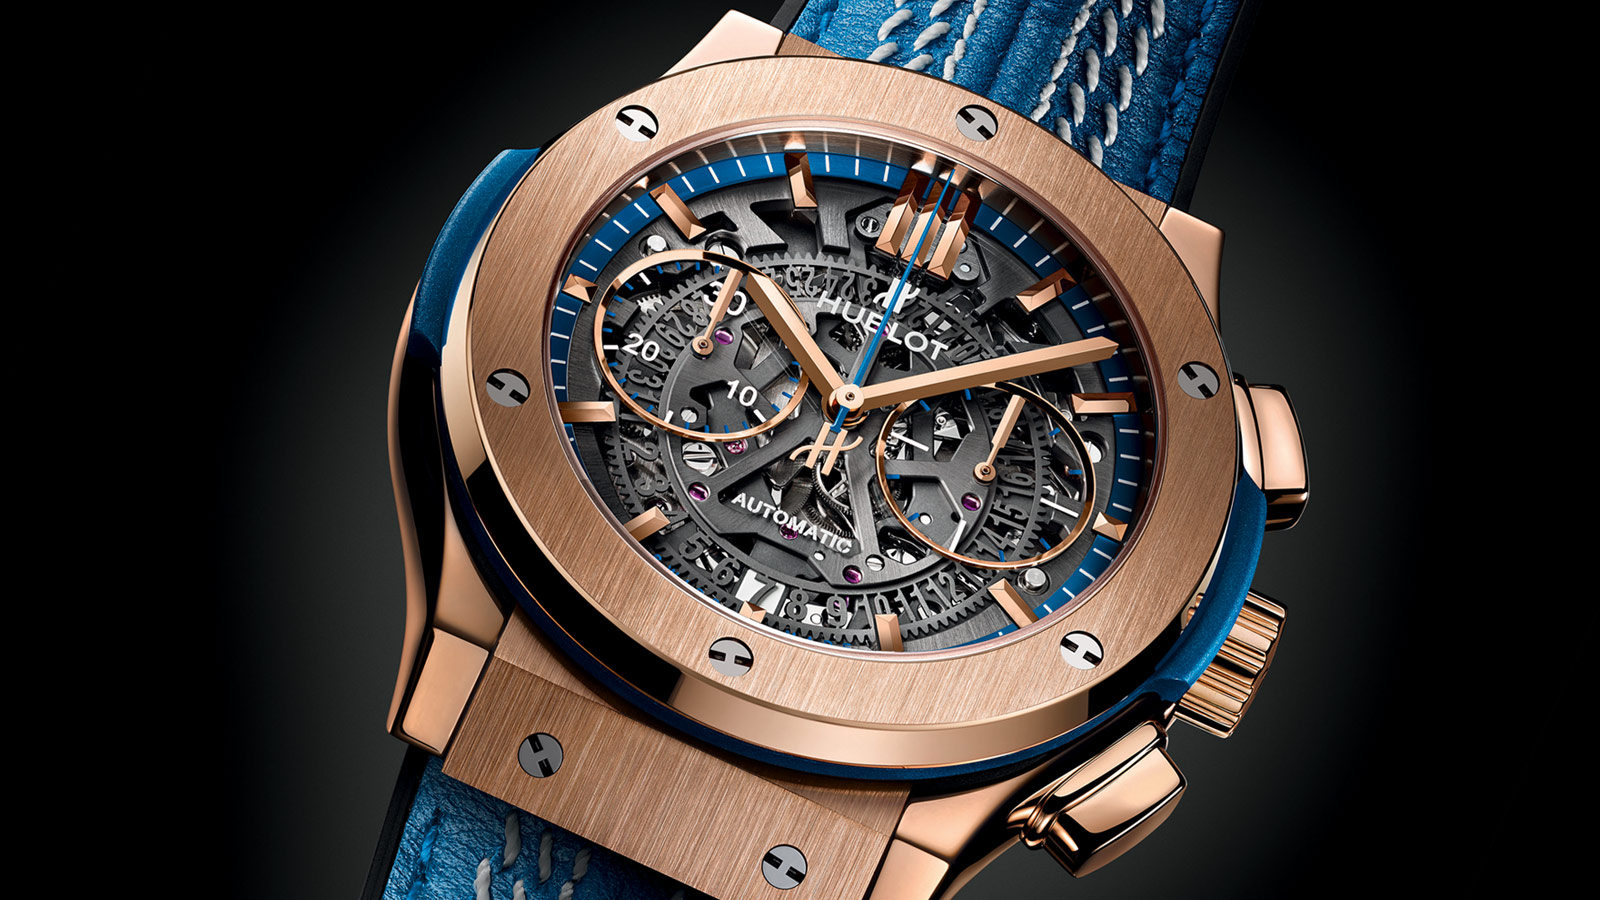 Марката за луксозни часовници Hublot представя нов модел който може да се купи само с Биткойн